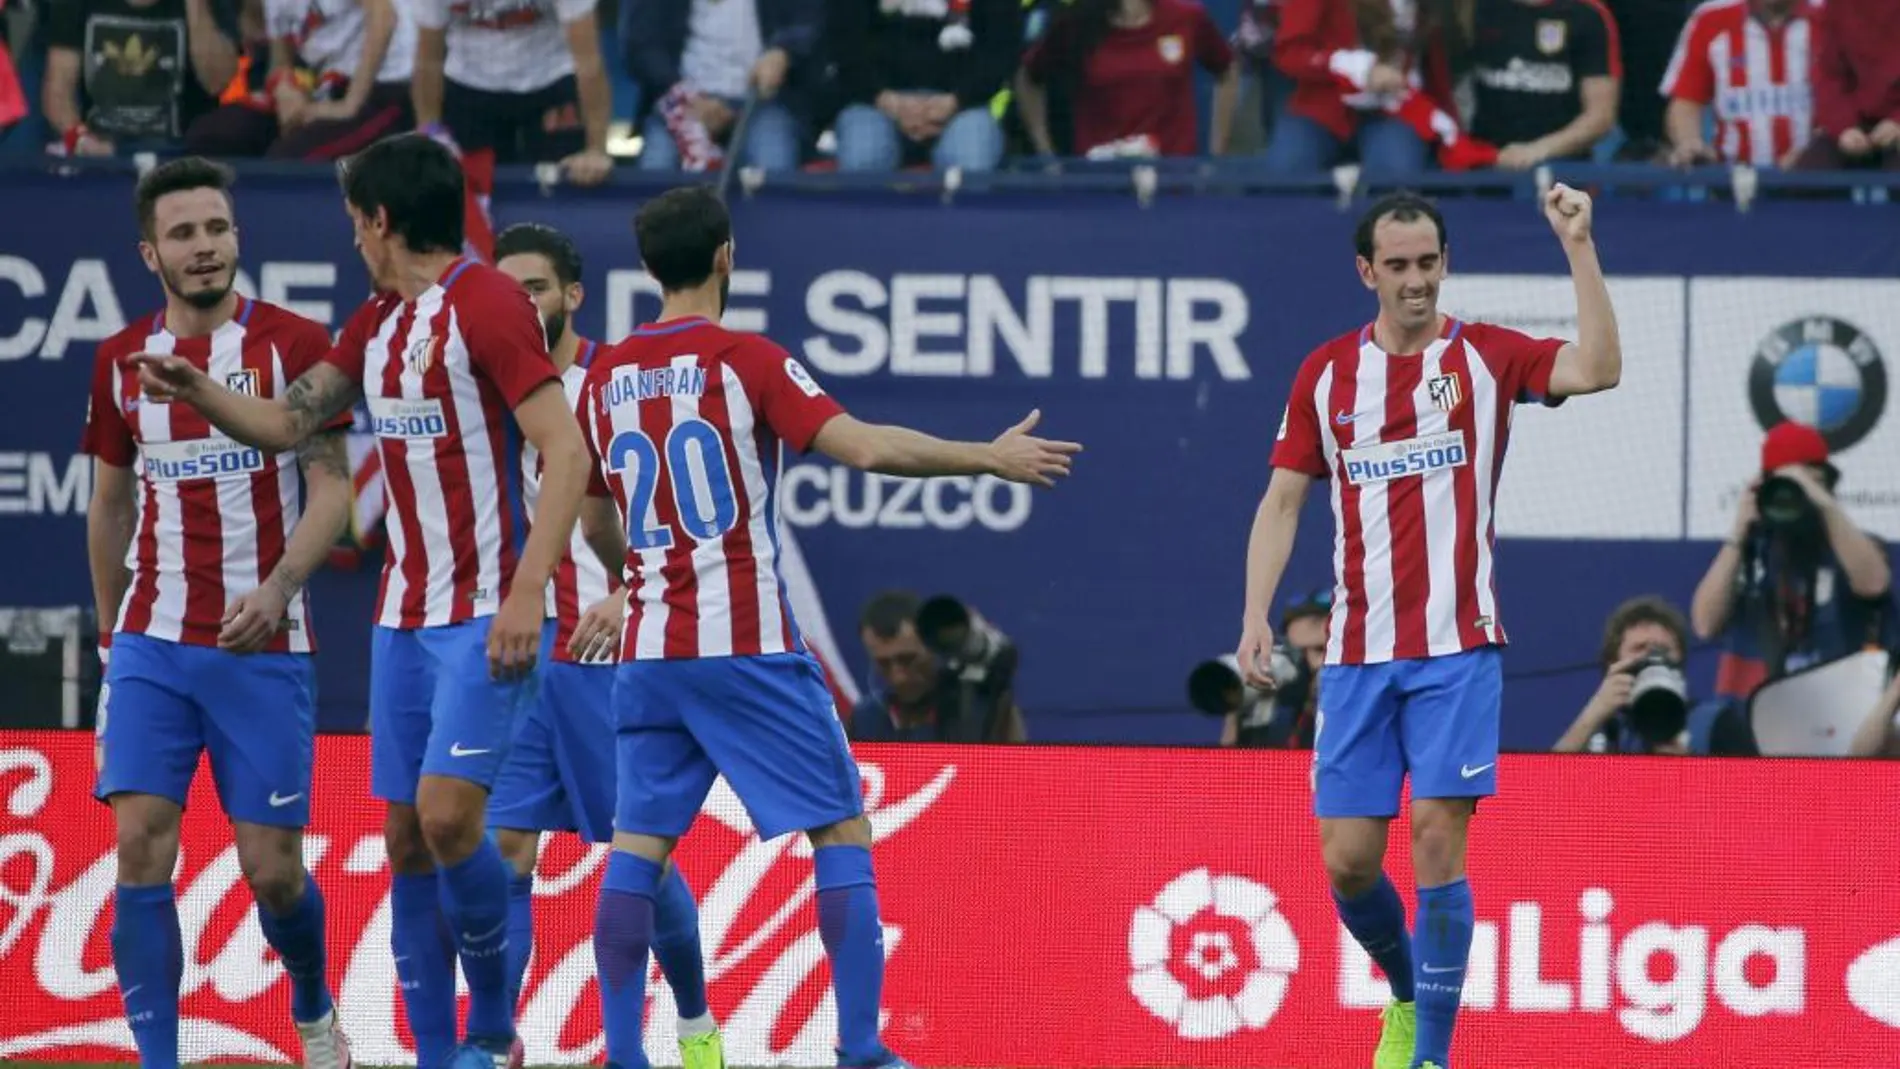 El defensa Diego Godín celebra su gol marcado al Sevill